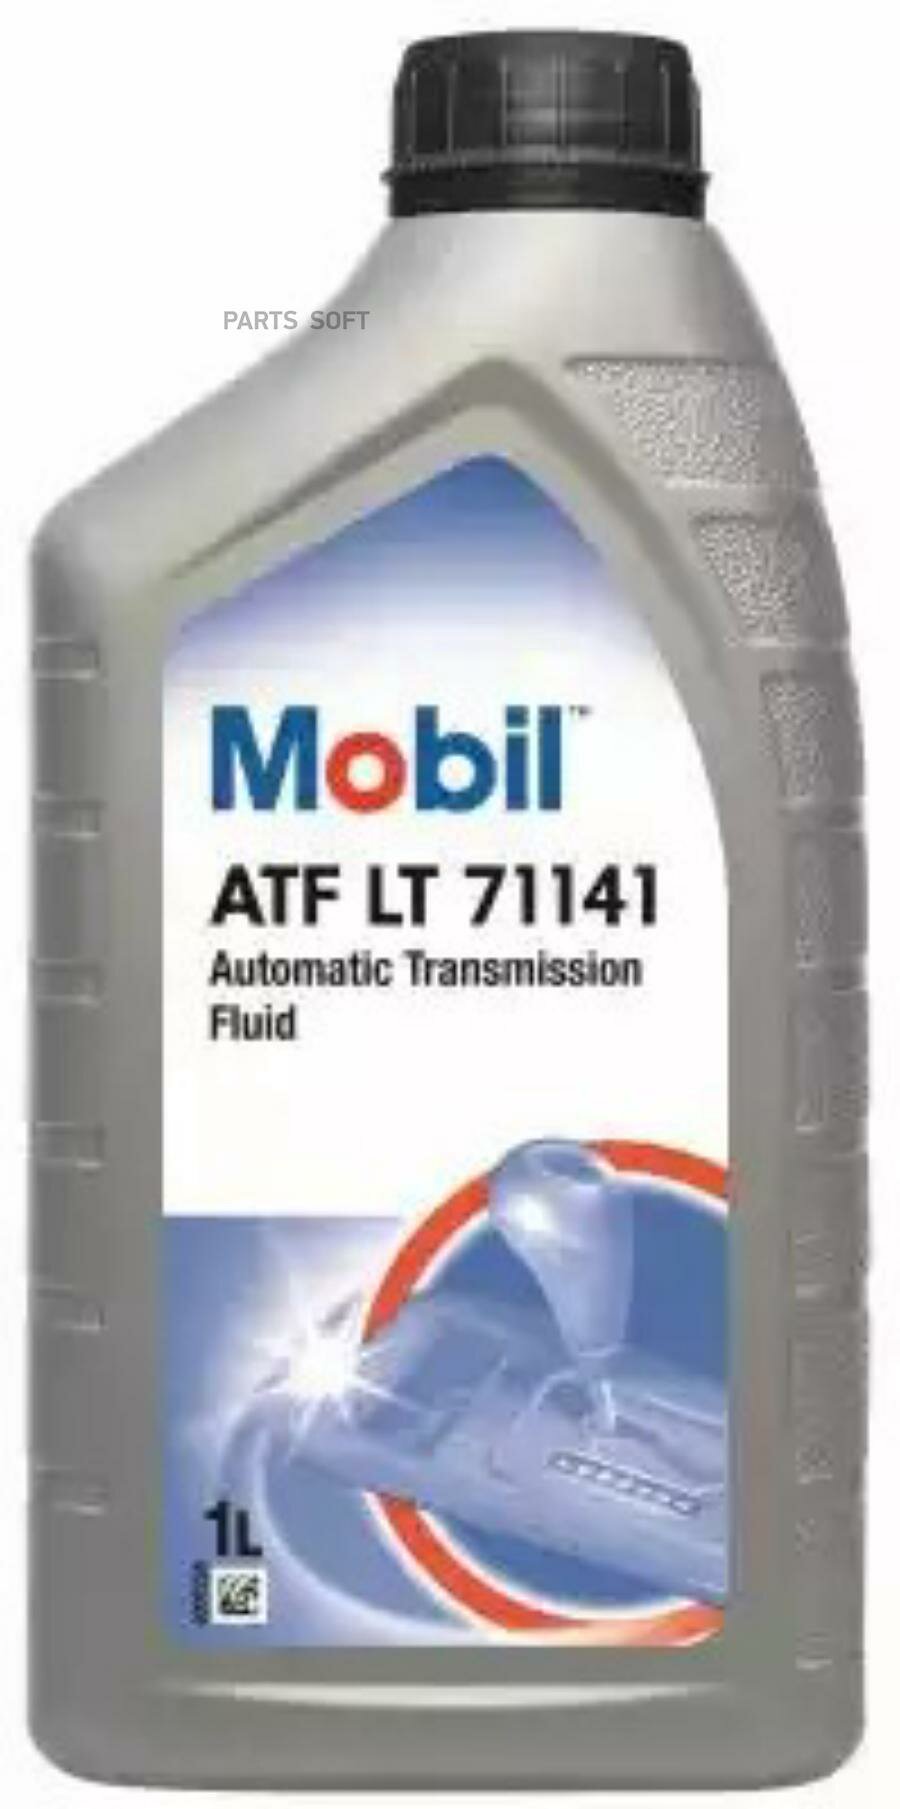 MOBIL 151010 Масло трансмиссионное полусинтетическое ATF LT 71141 1л